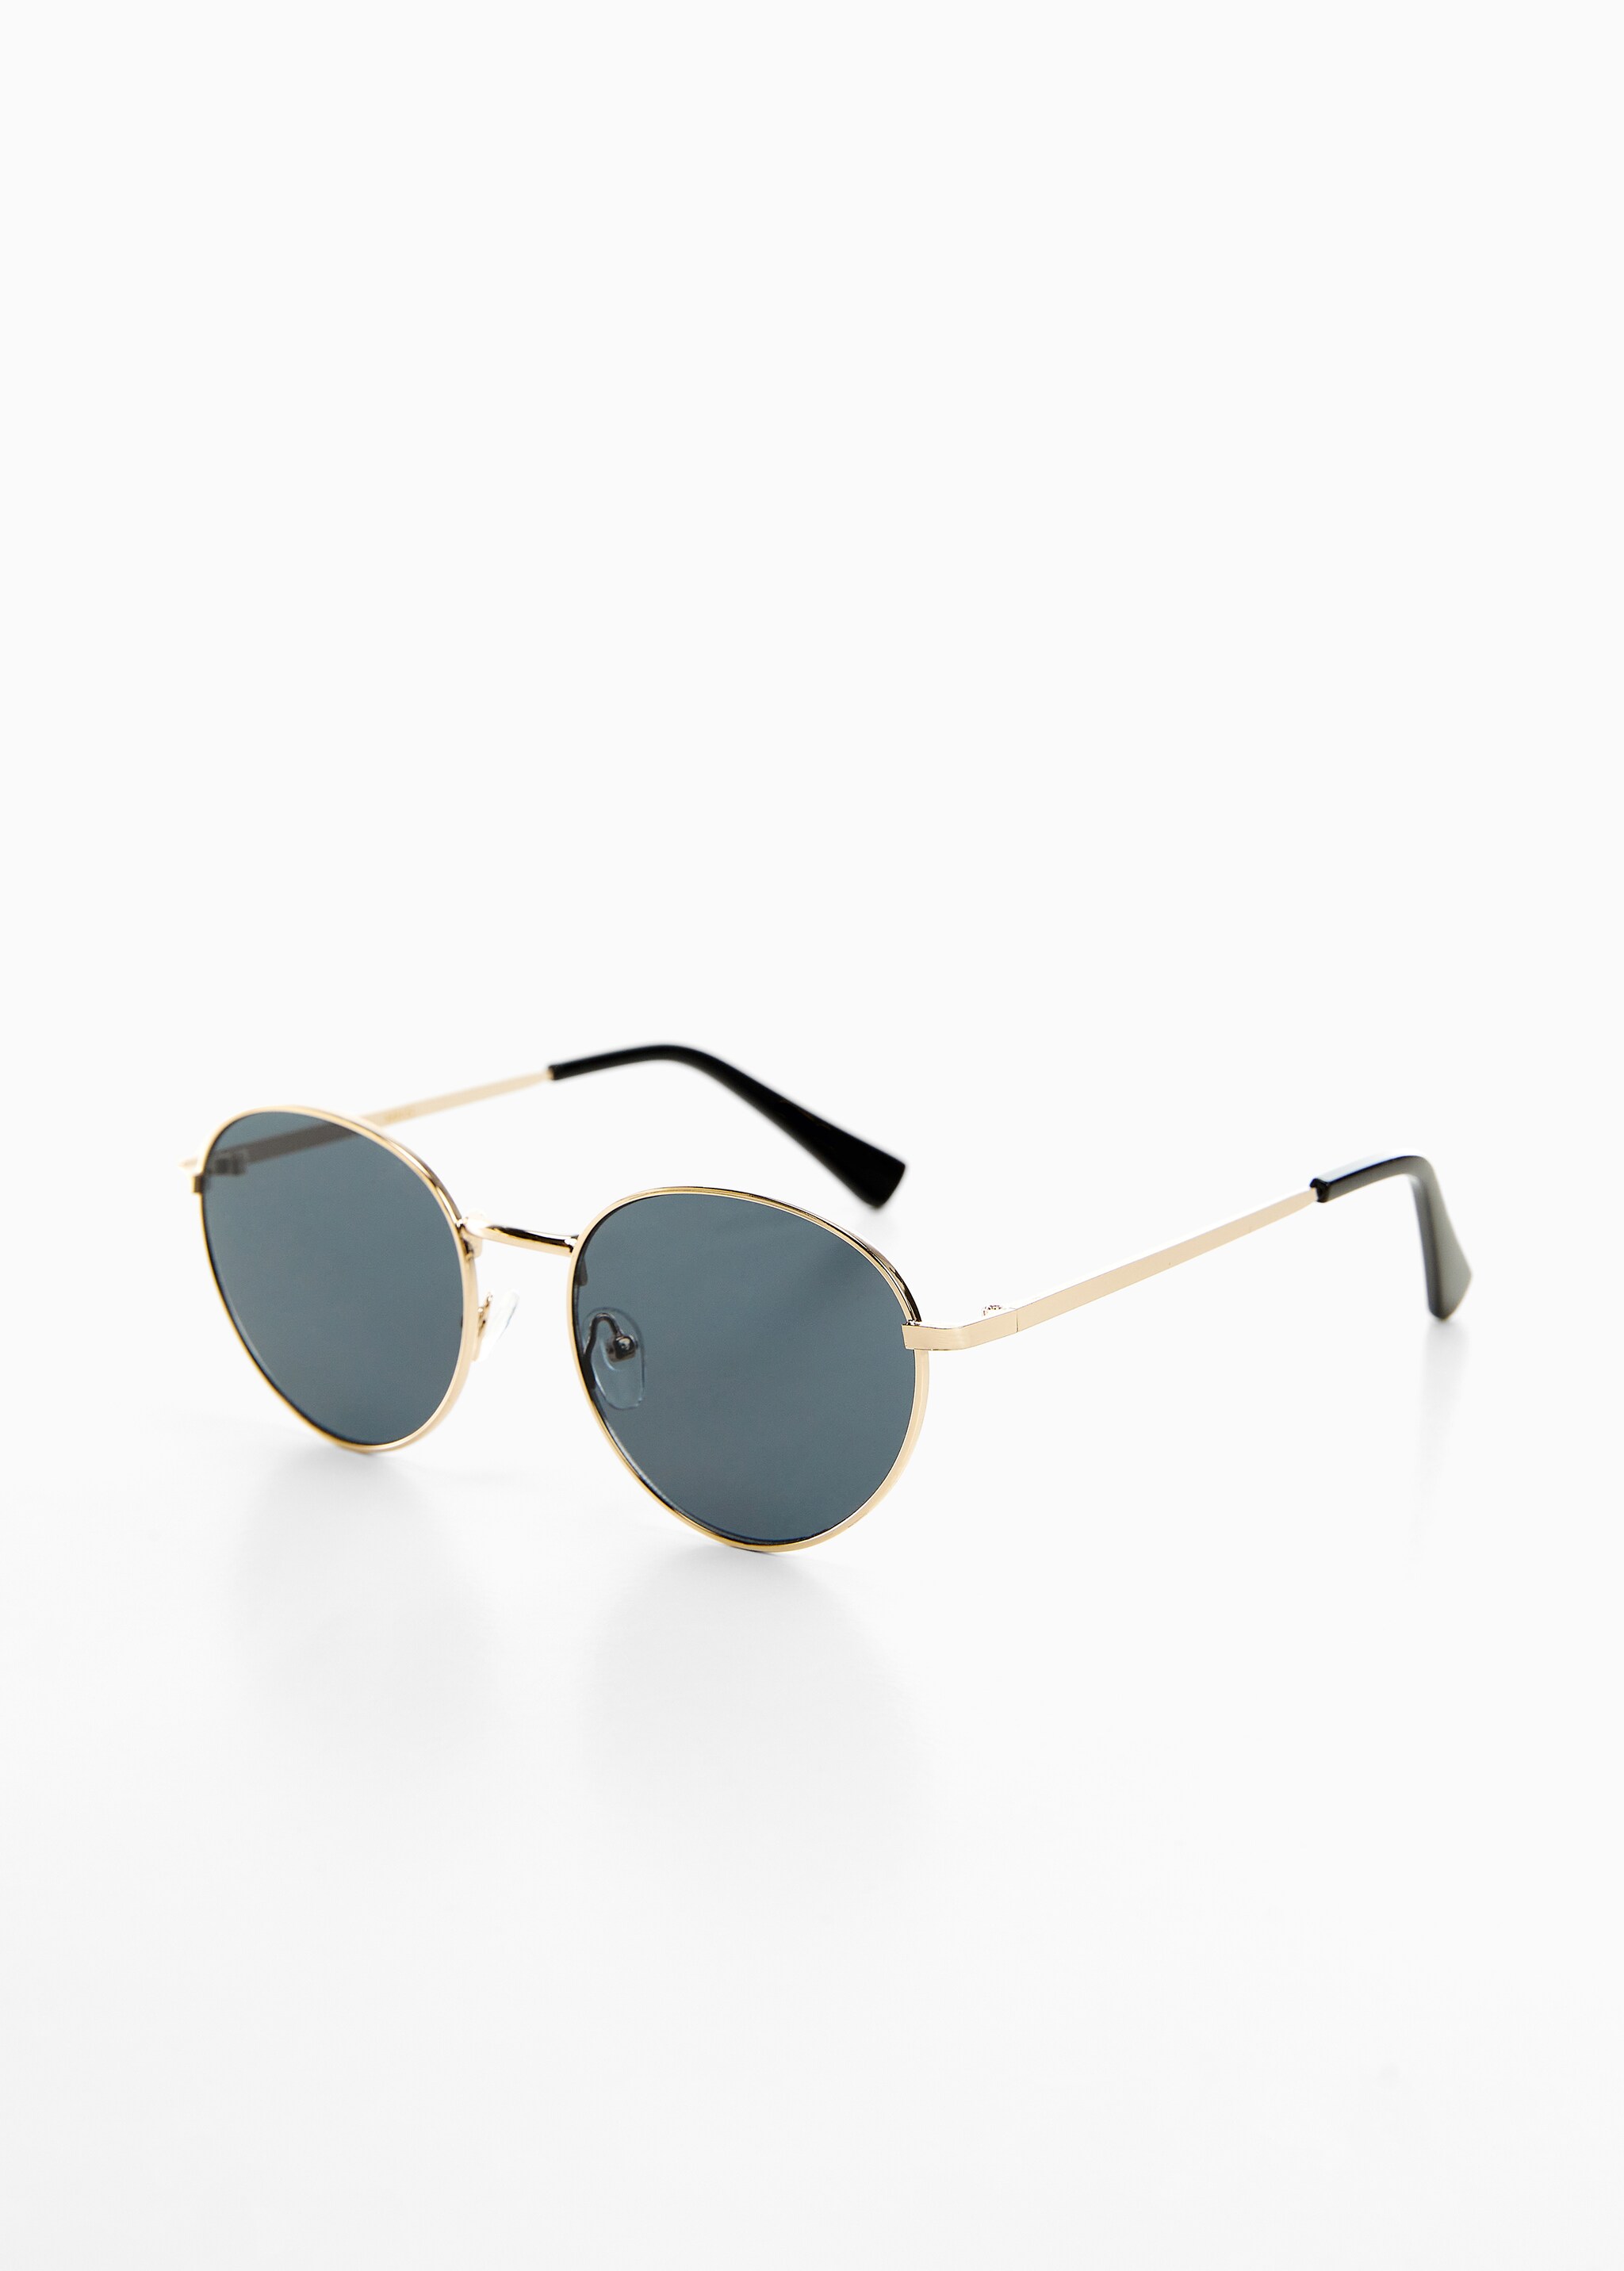 Round metal-rimmed sunglasses - Medium plane